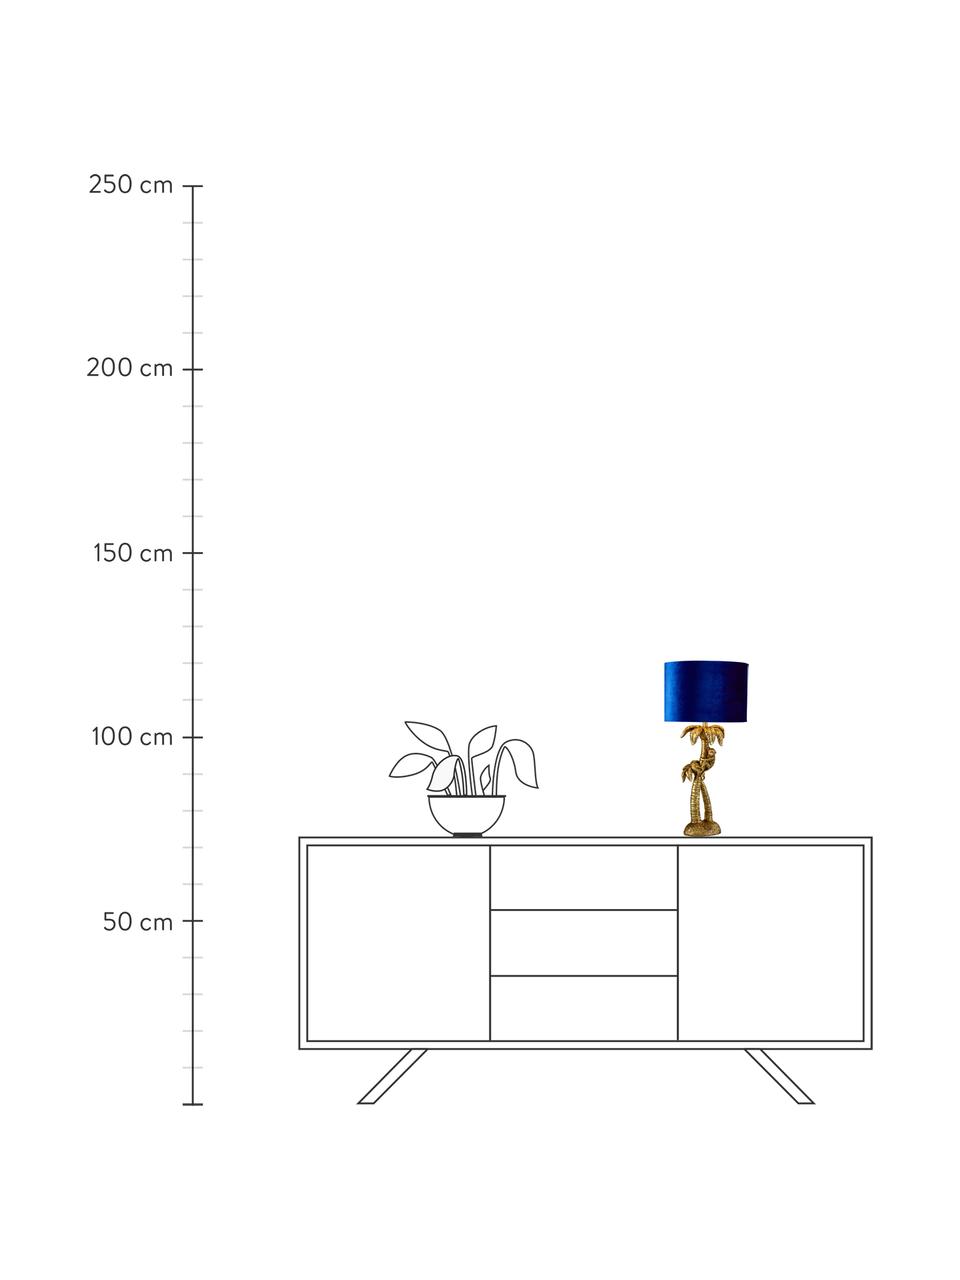 Lampa stołowa z kloszem z aksamitu Palmtree, Niebieski, odcienie złotego, Ø 23 x W 47 cm